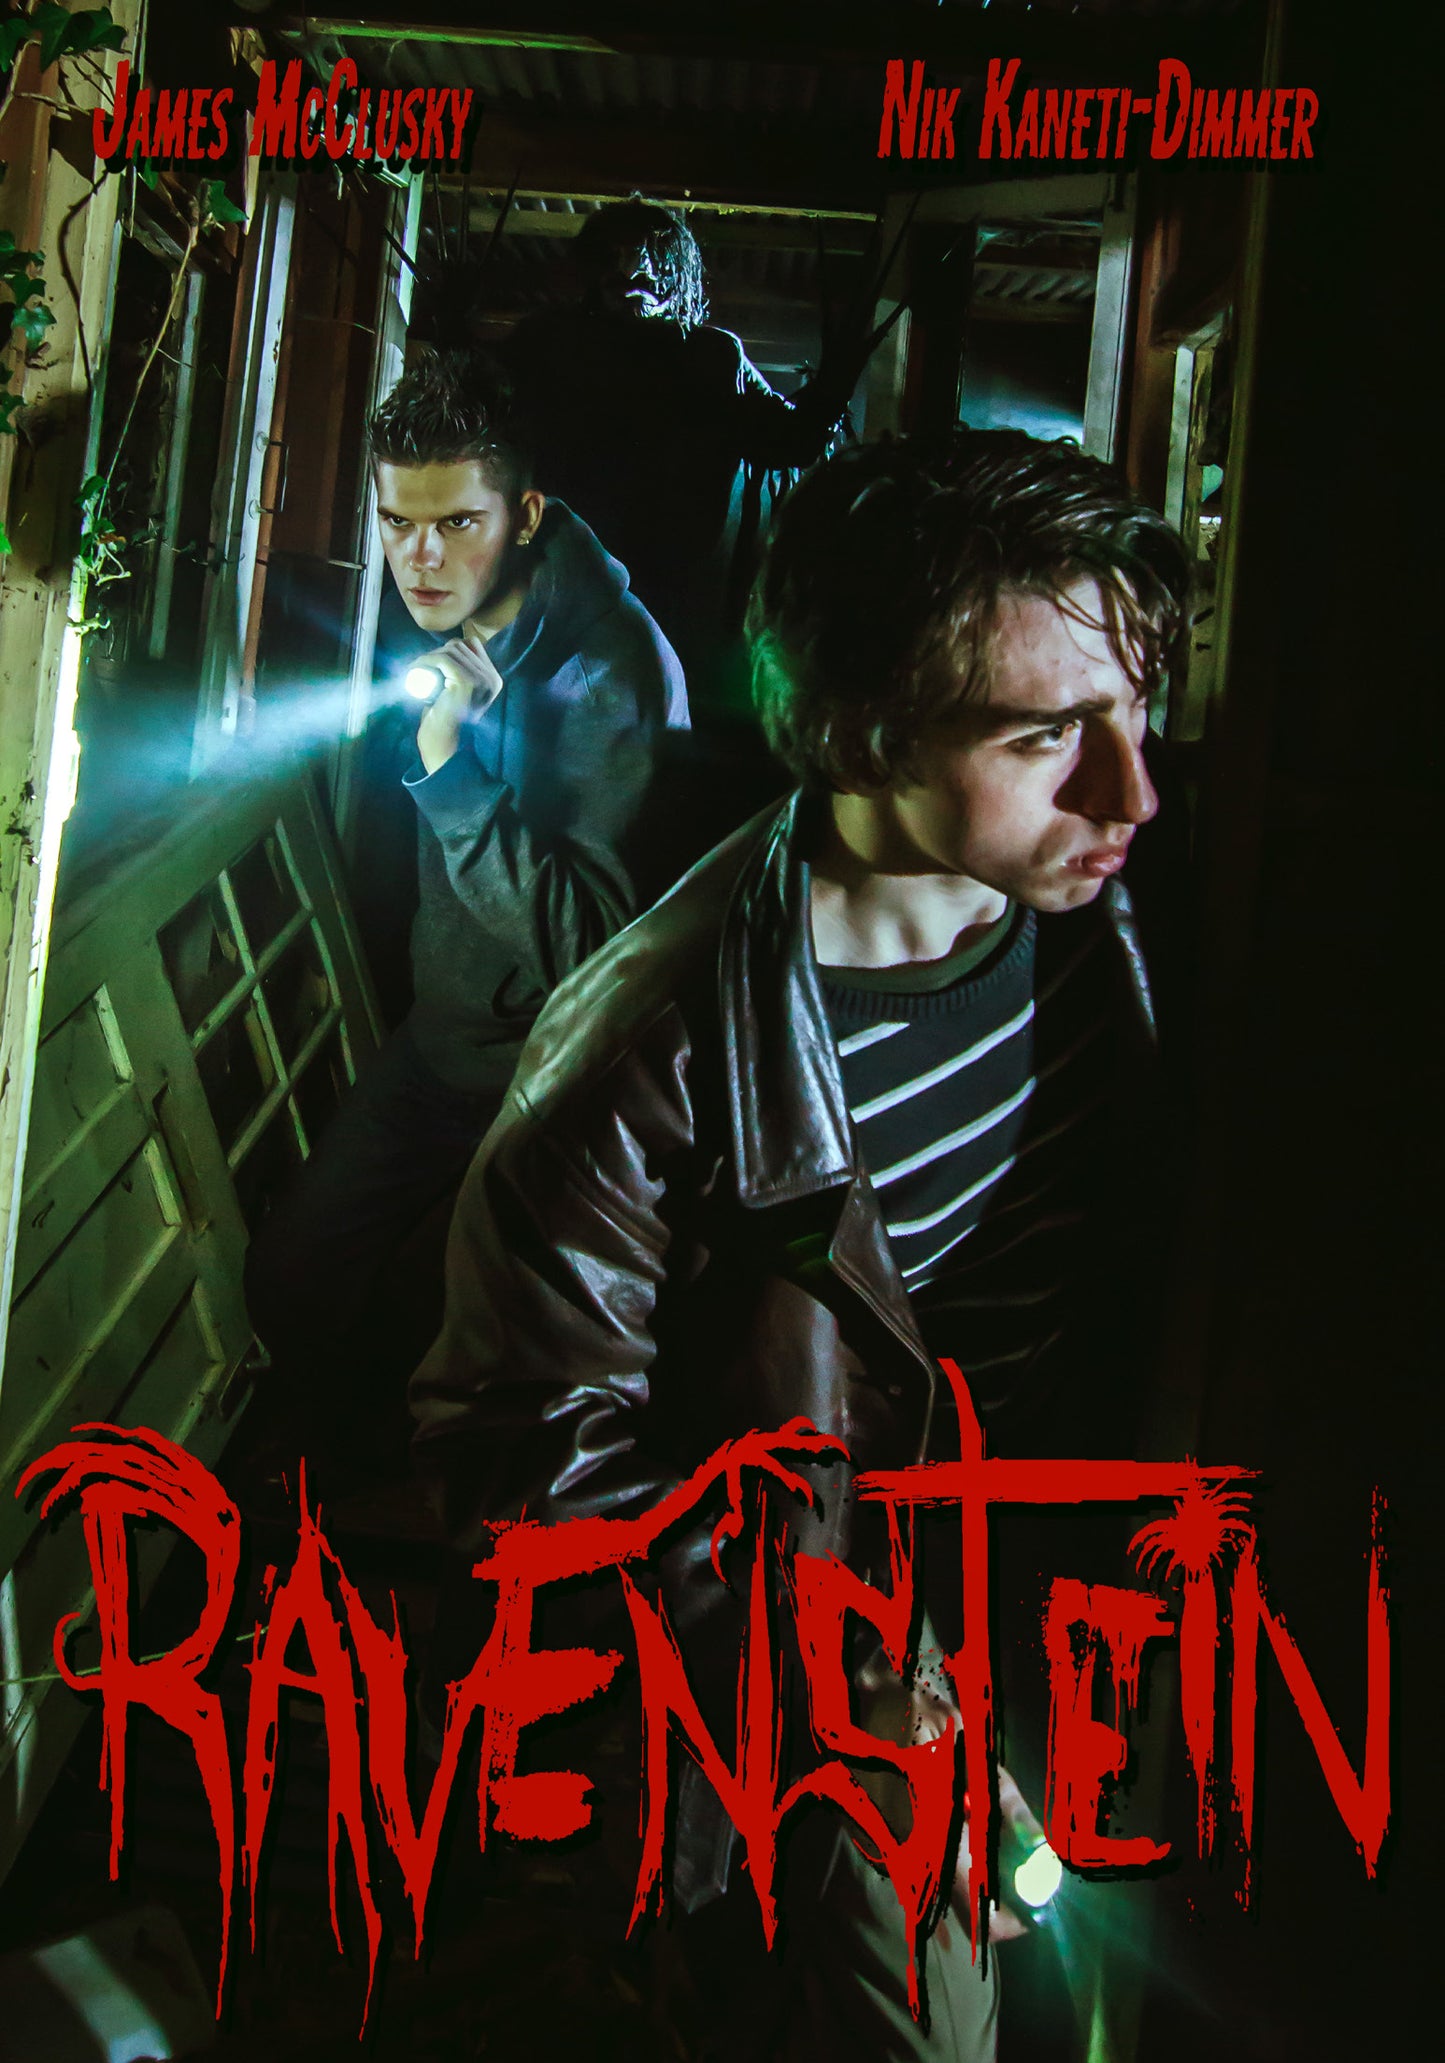 Ravenstein cover art